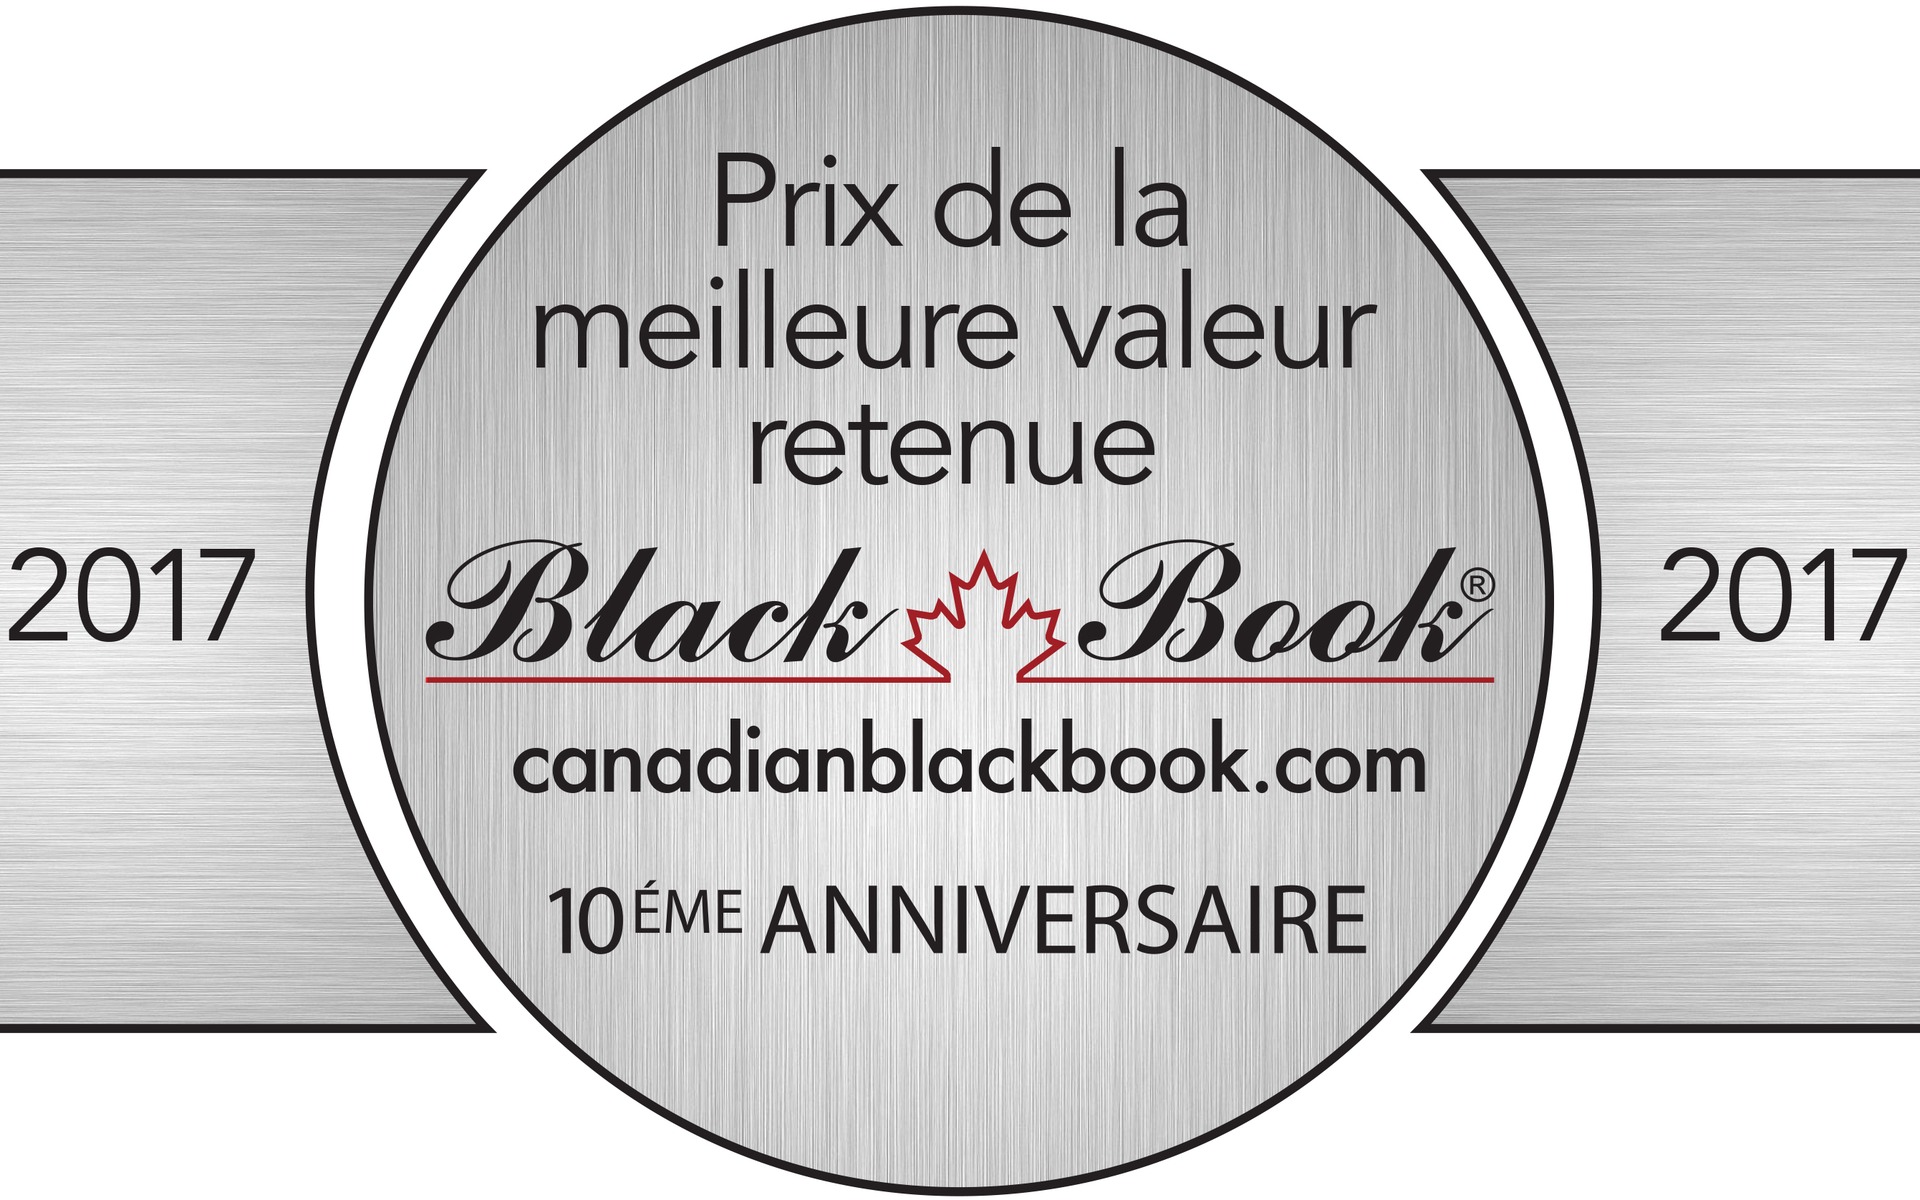 Prix de la Meilleure valeur retenue 2017 du Canadian Black Book.